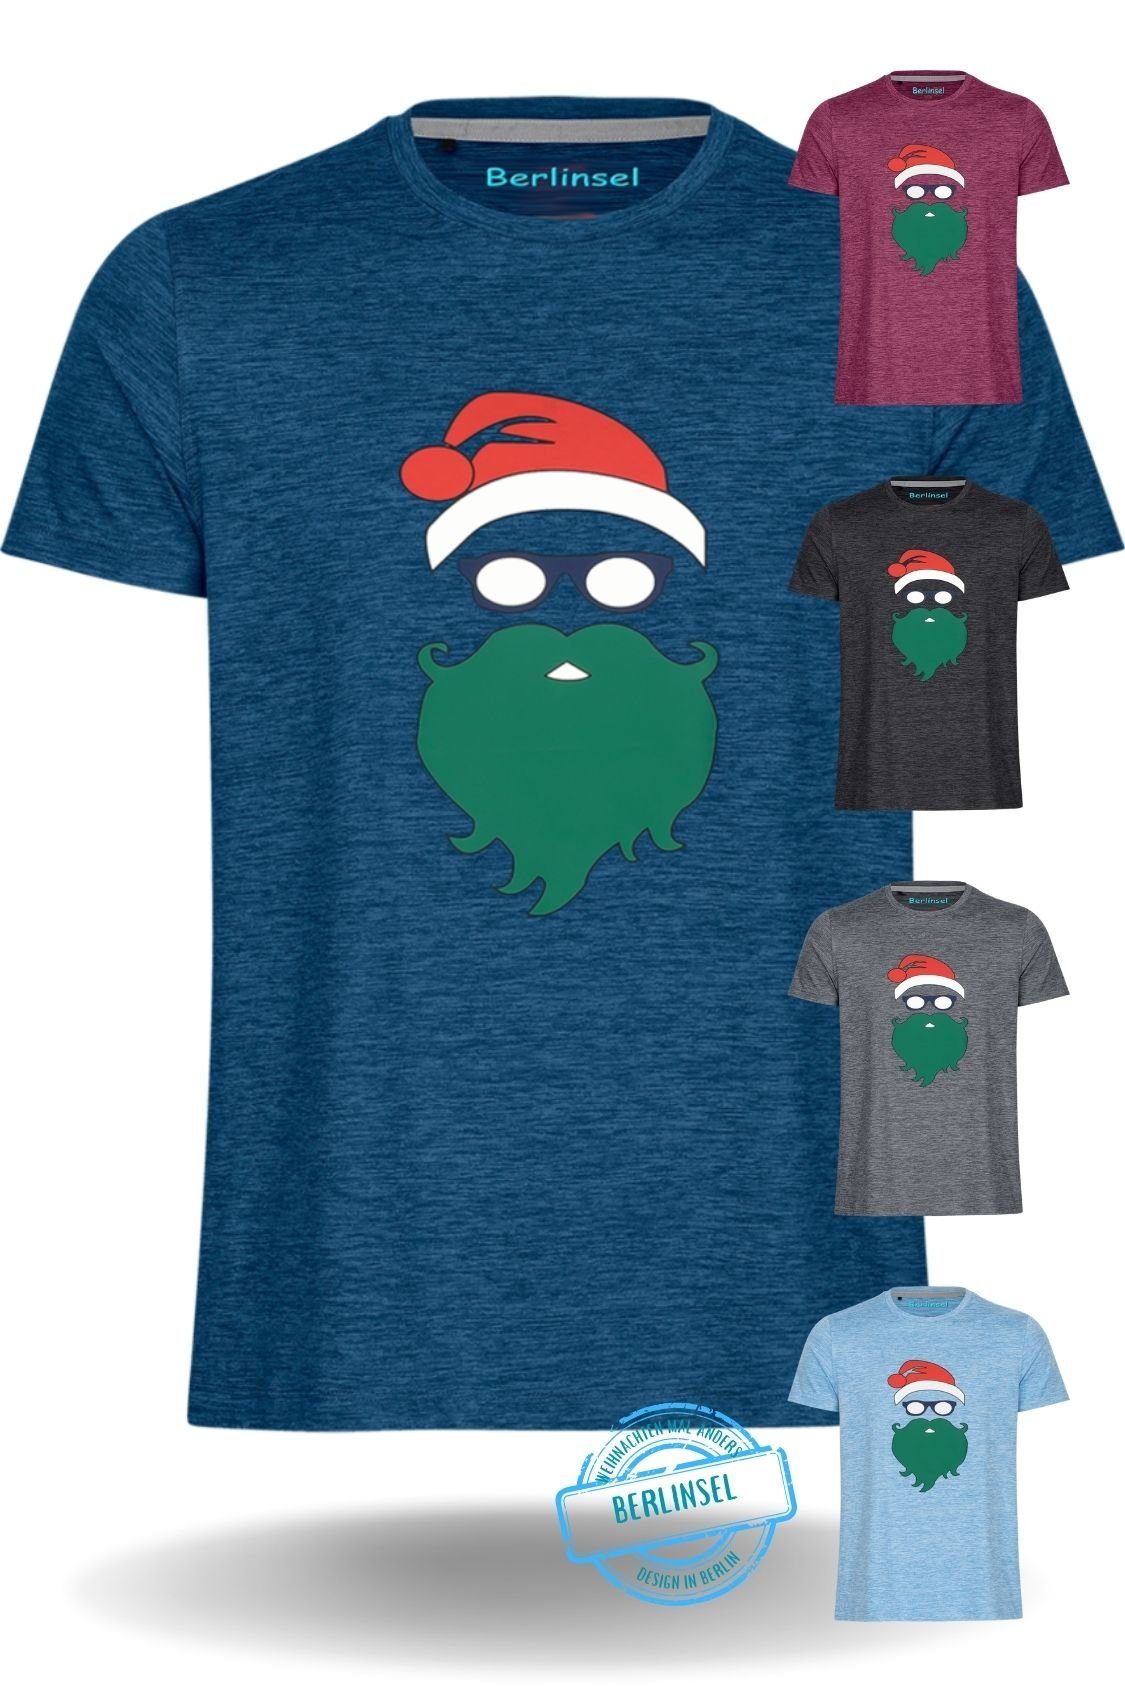 Weihnachtsfeier, Berlinsel Weihnachtsgeschenk, Weihnachtsfoto blau Herren Printshirt Weihnachtsshirt Weihnachtsoutfit T-Shirt Männer